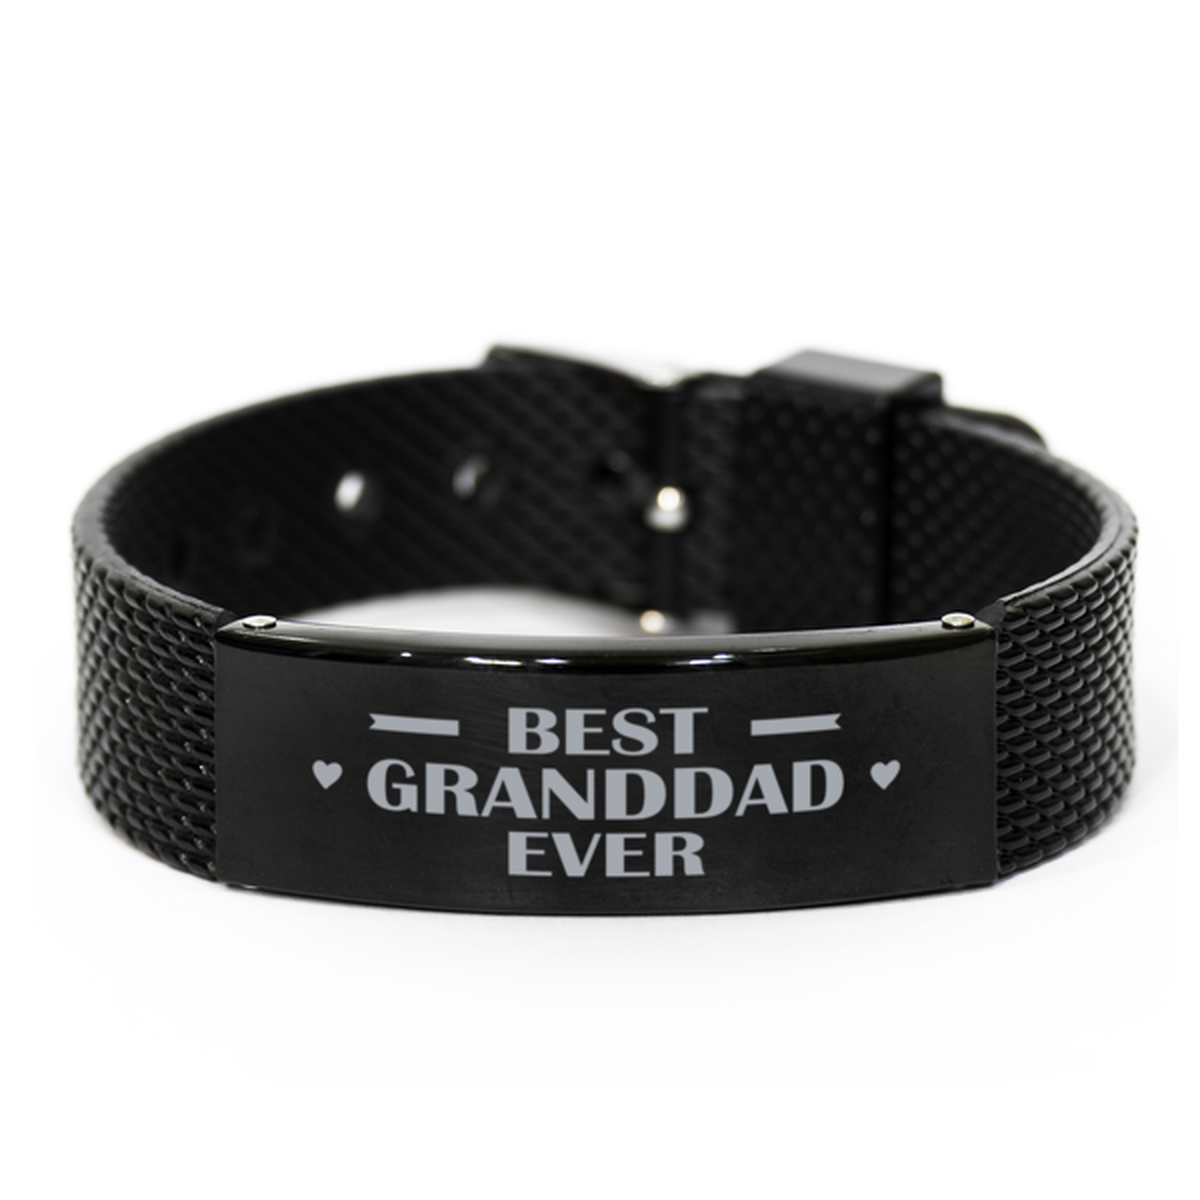 Best Granddad Ever Granddad Gifts, Gag Engraved Bracelet For Granddad, Best Family Gifts For Men